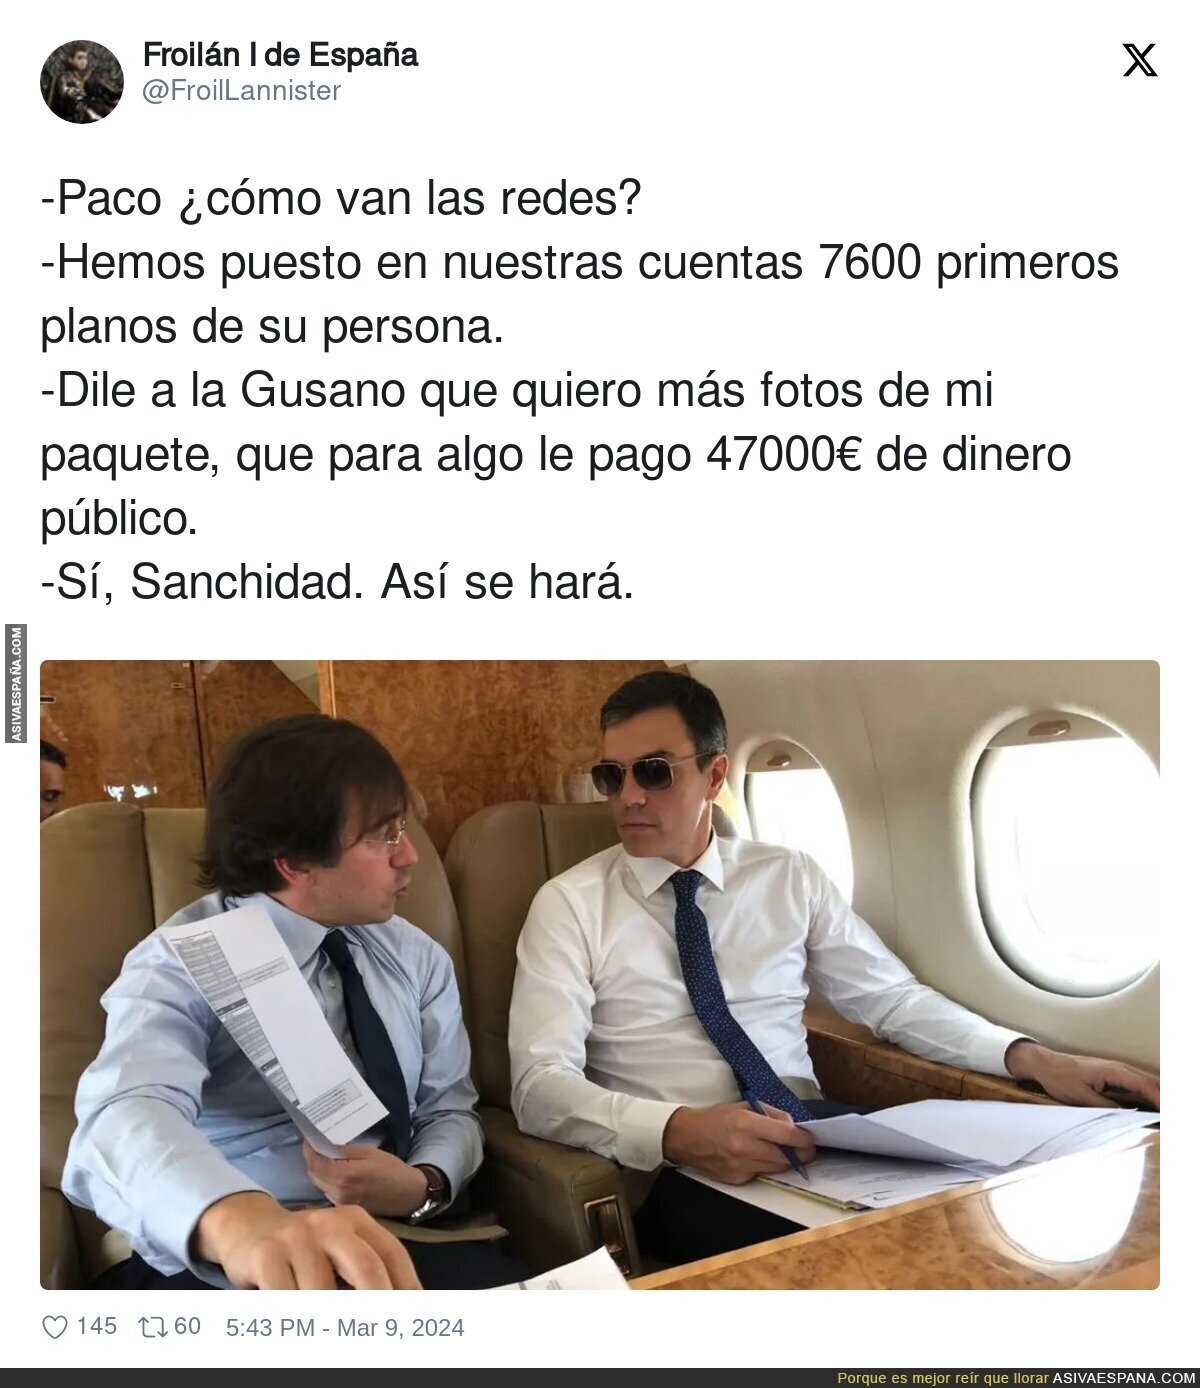 Campaña a todo trapo pro Pedro Sánchez